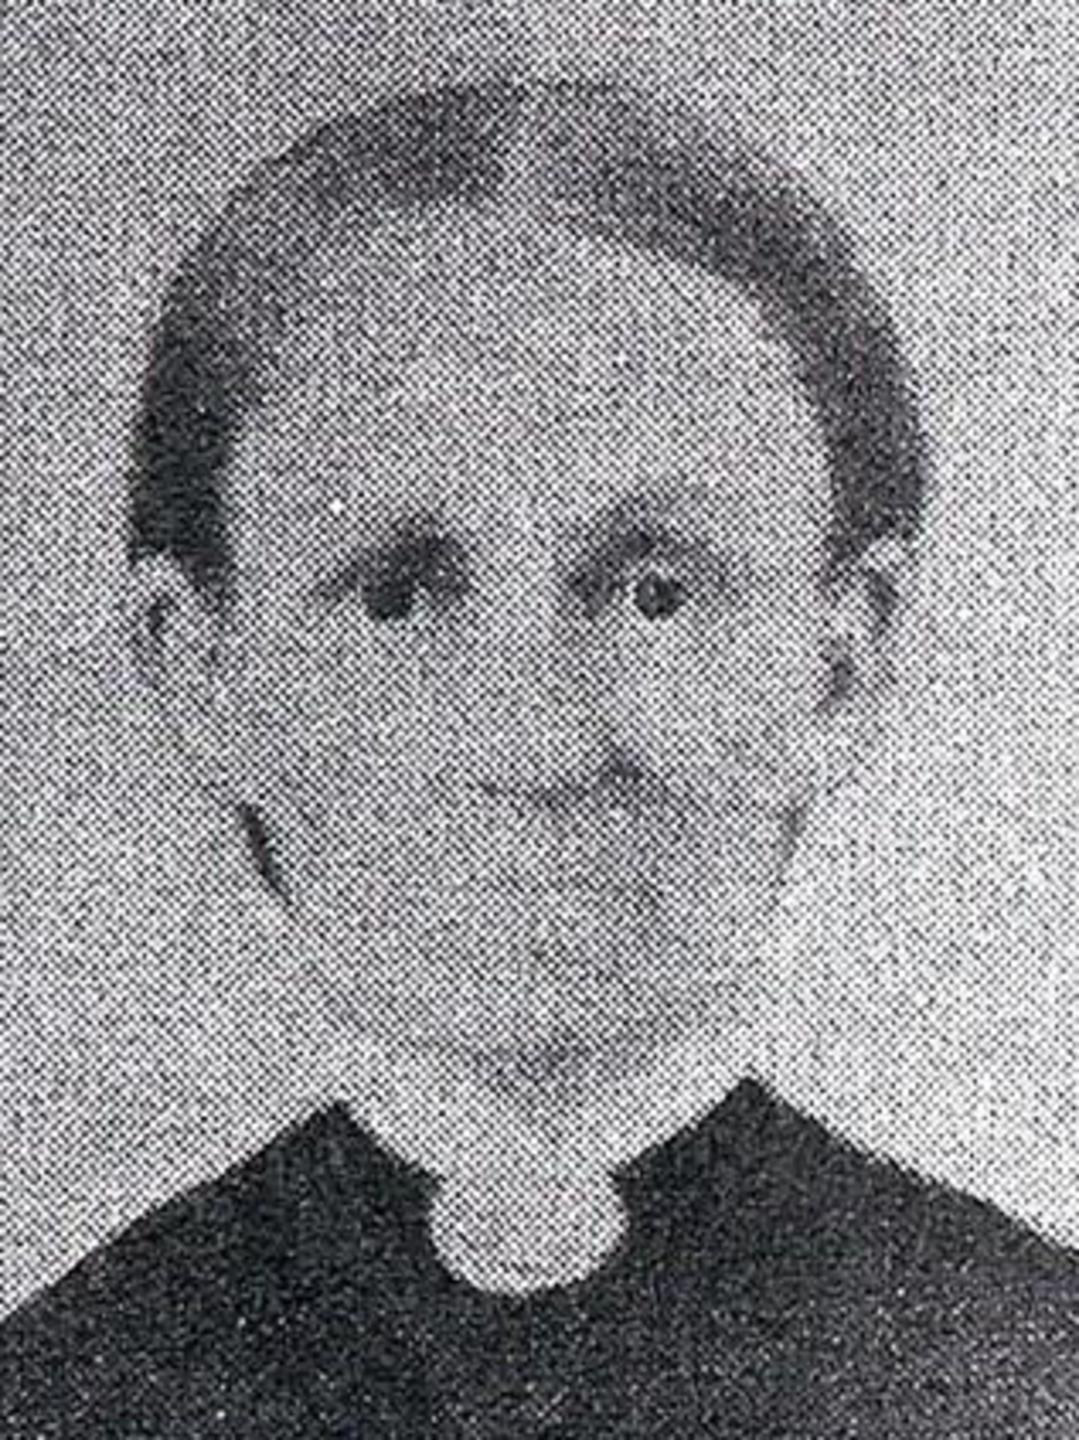 Mary Ann Marriott (1816 - 1877) Profile